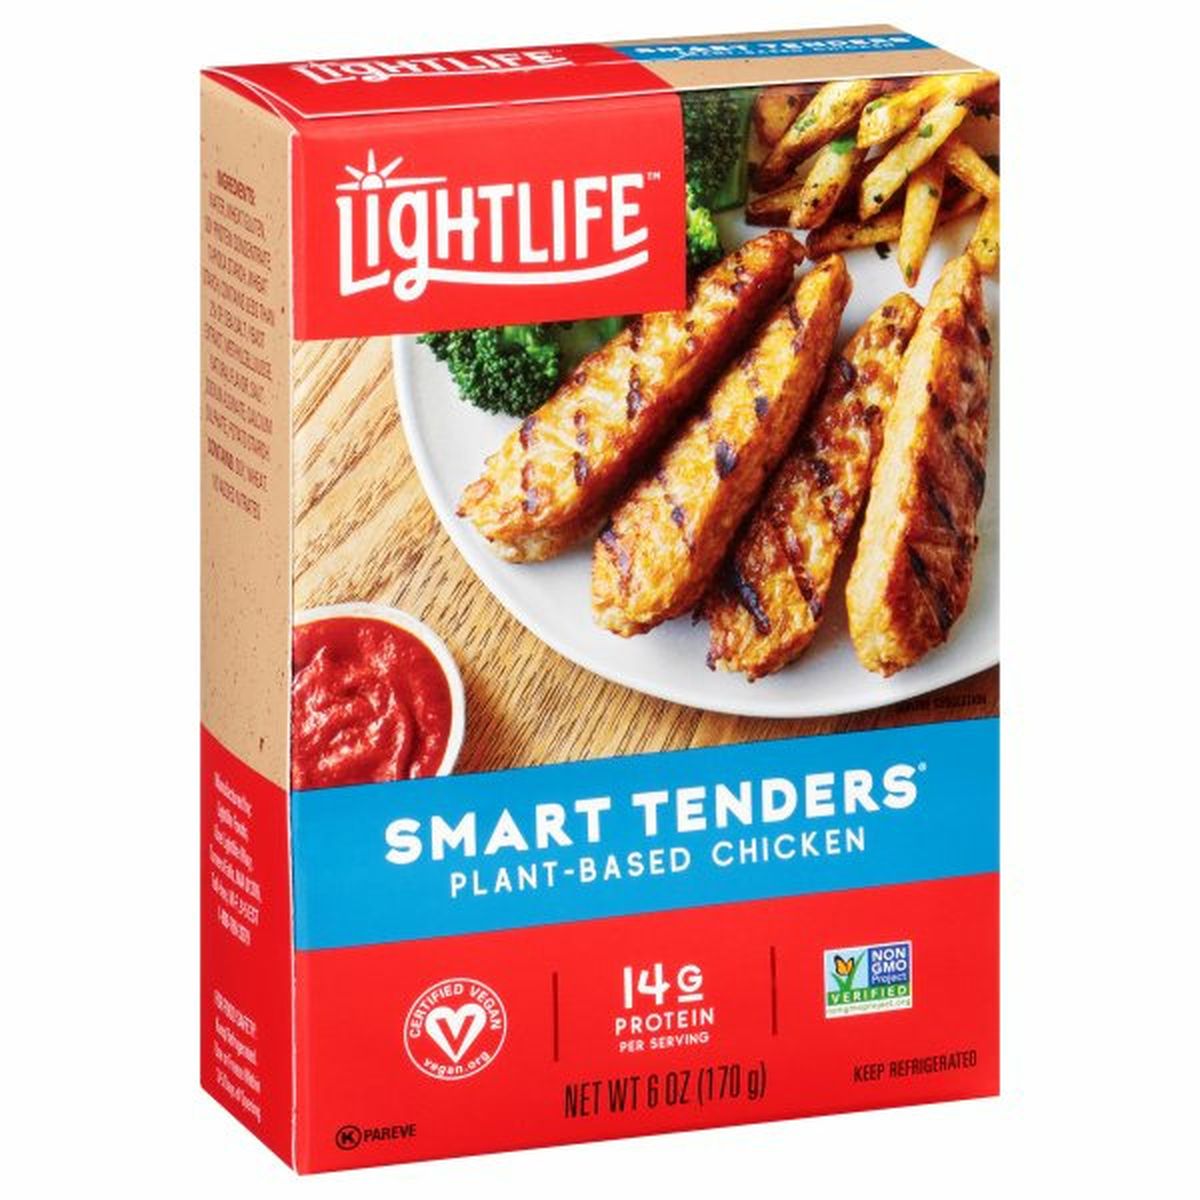 Calories in Lightlife Smart Tenders Chicken, Plant-Based